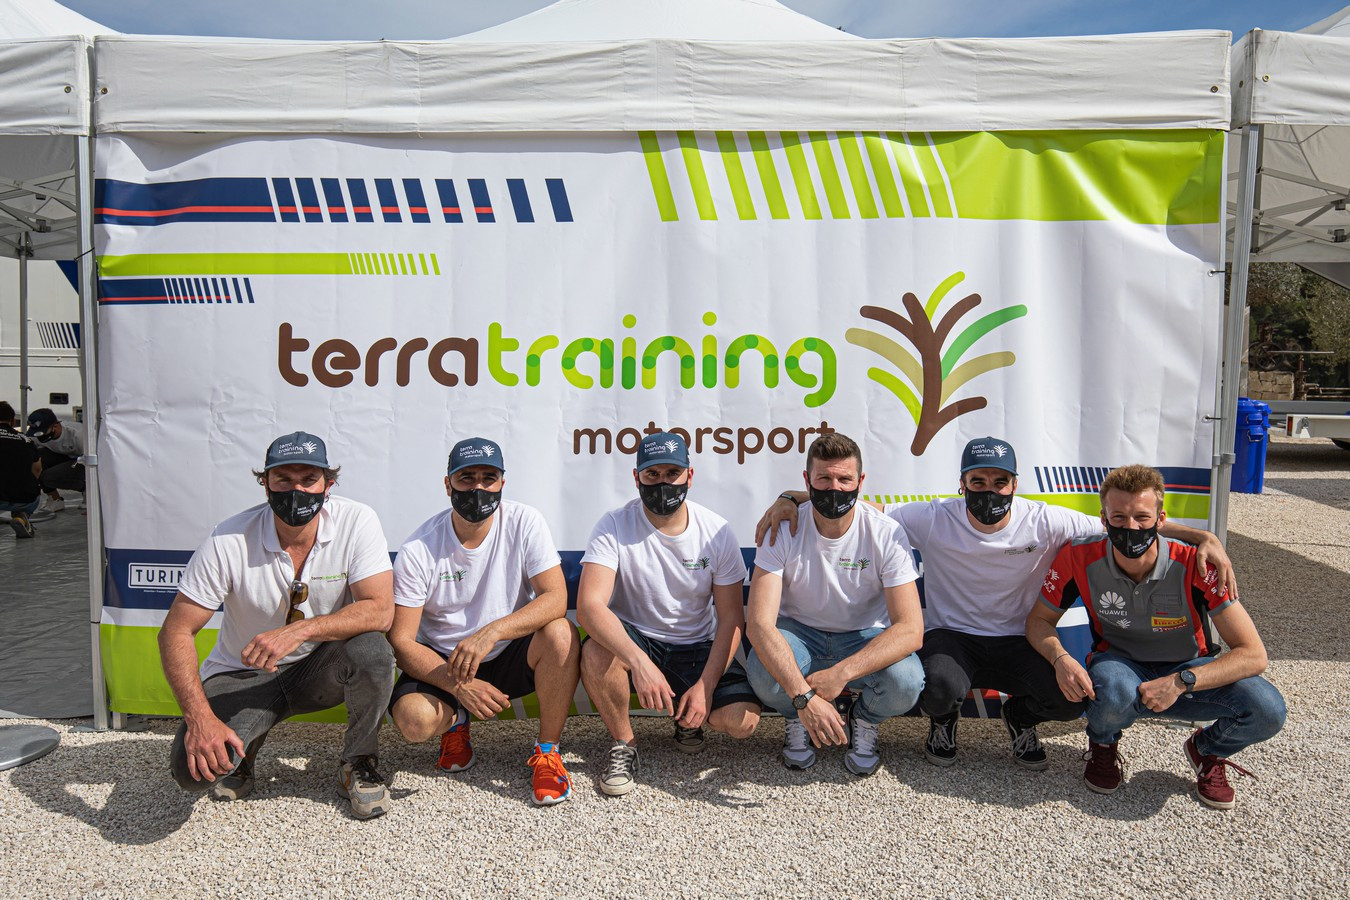 Terra Training Motorsport